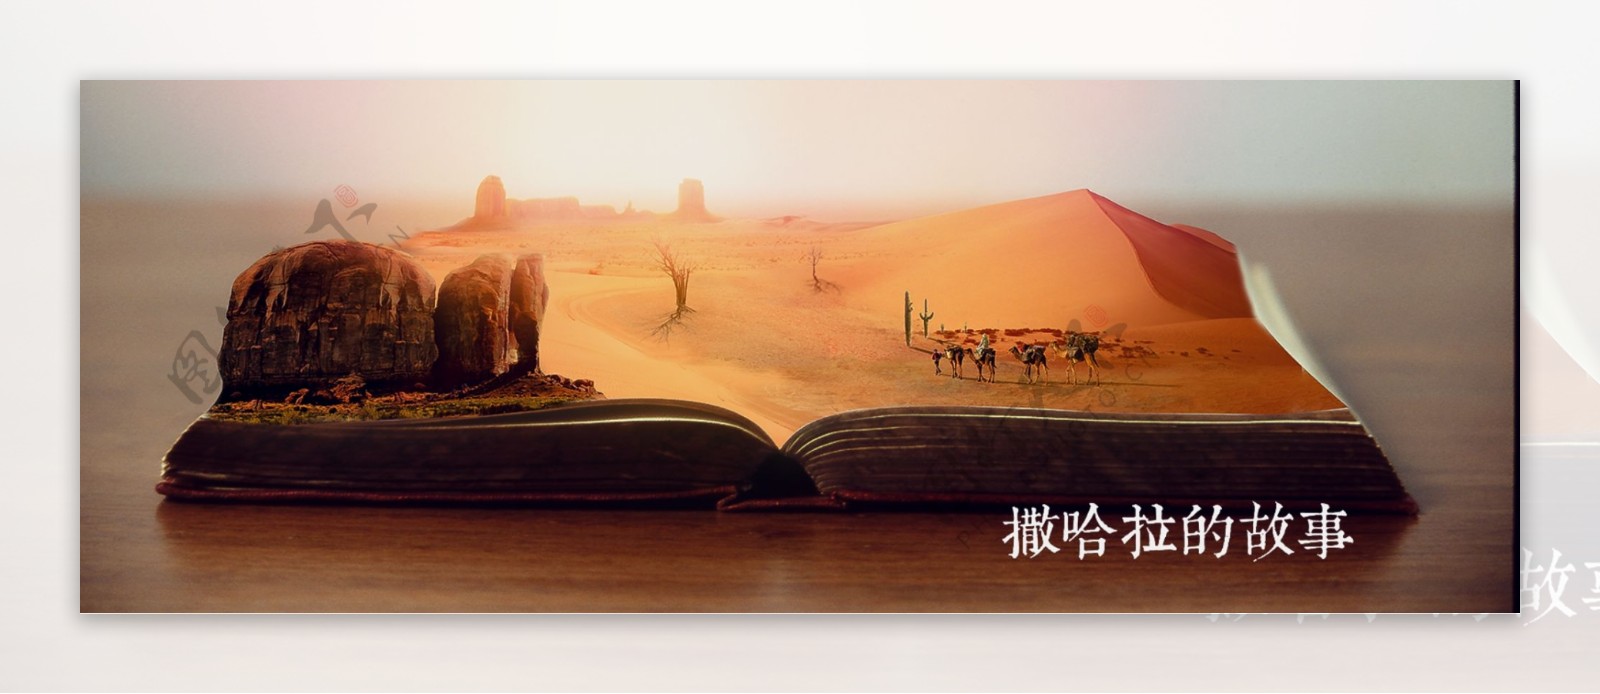 创意类海报合成沙漠风格